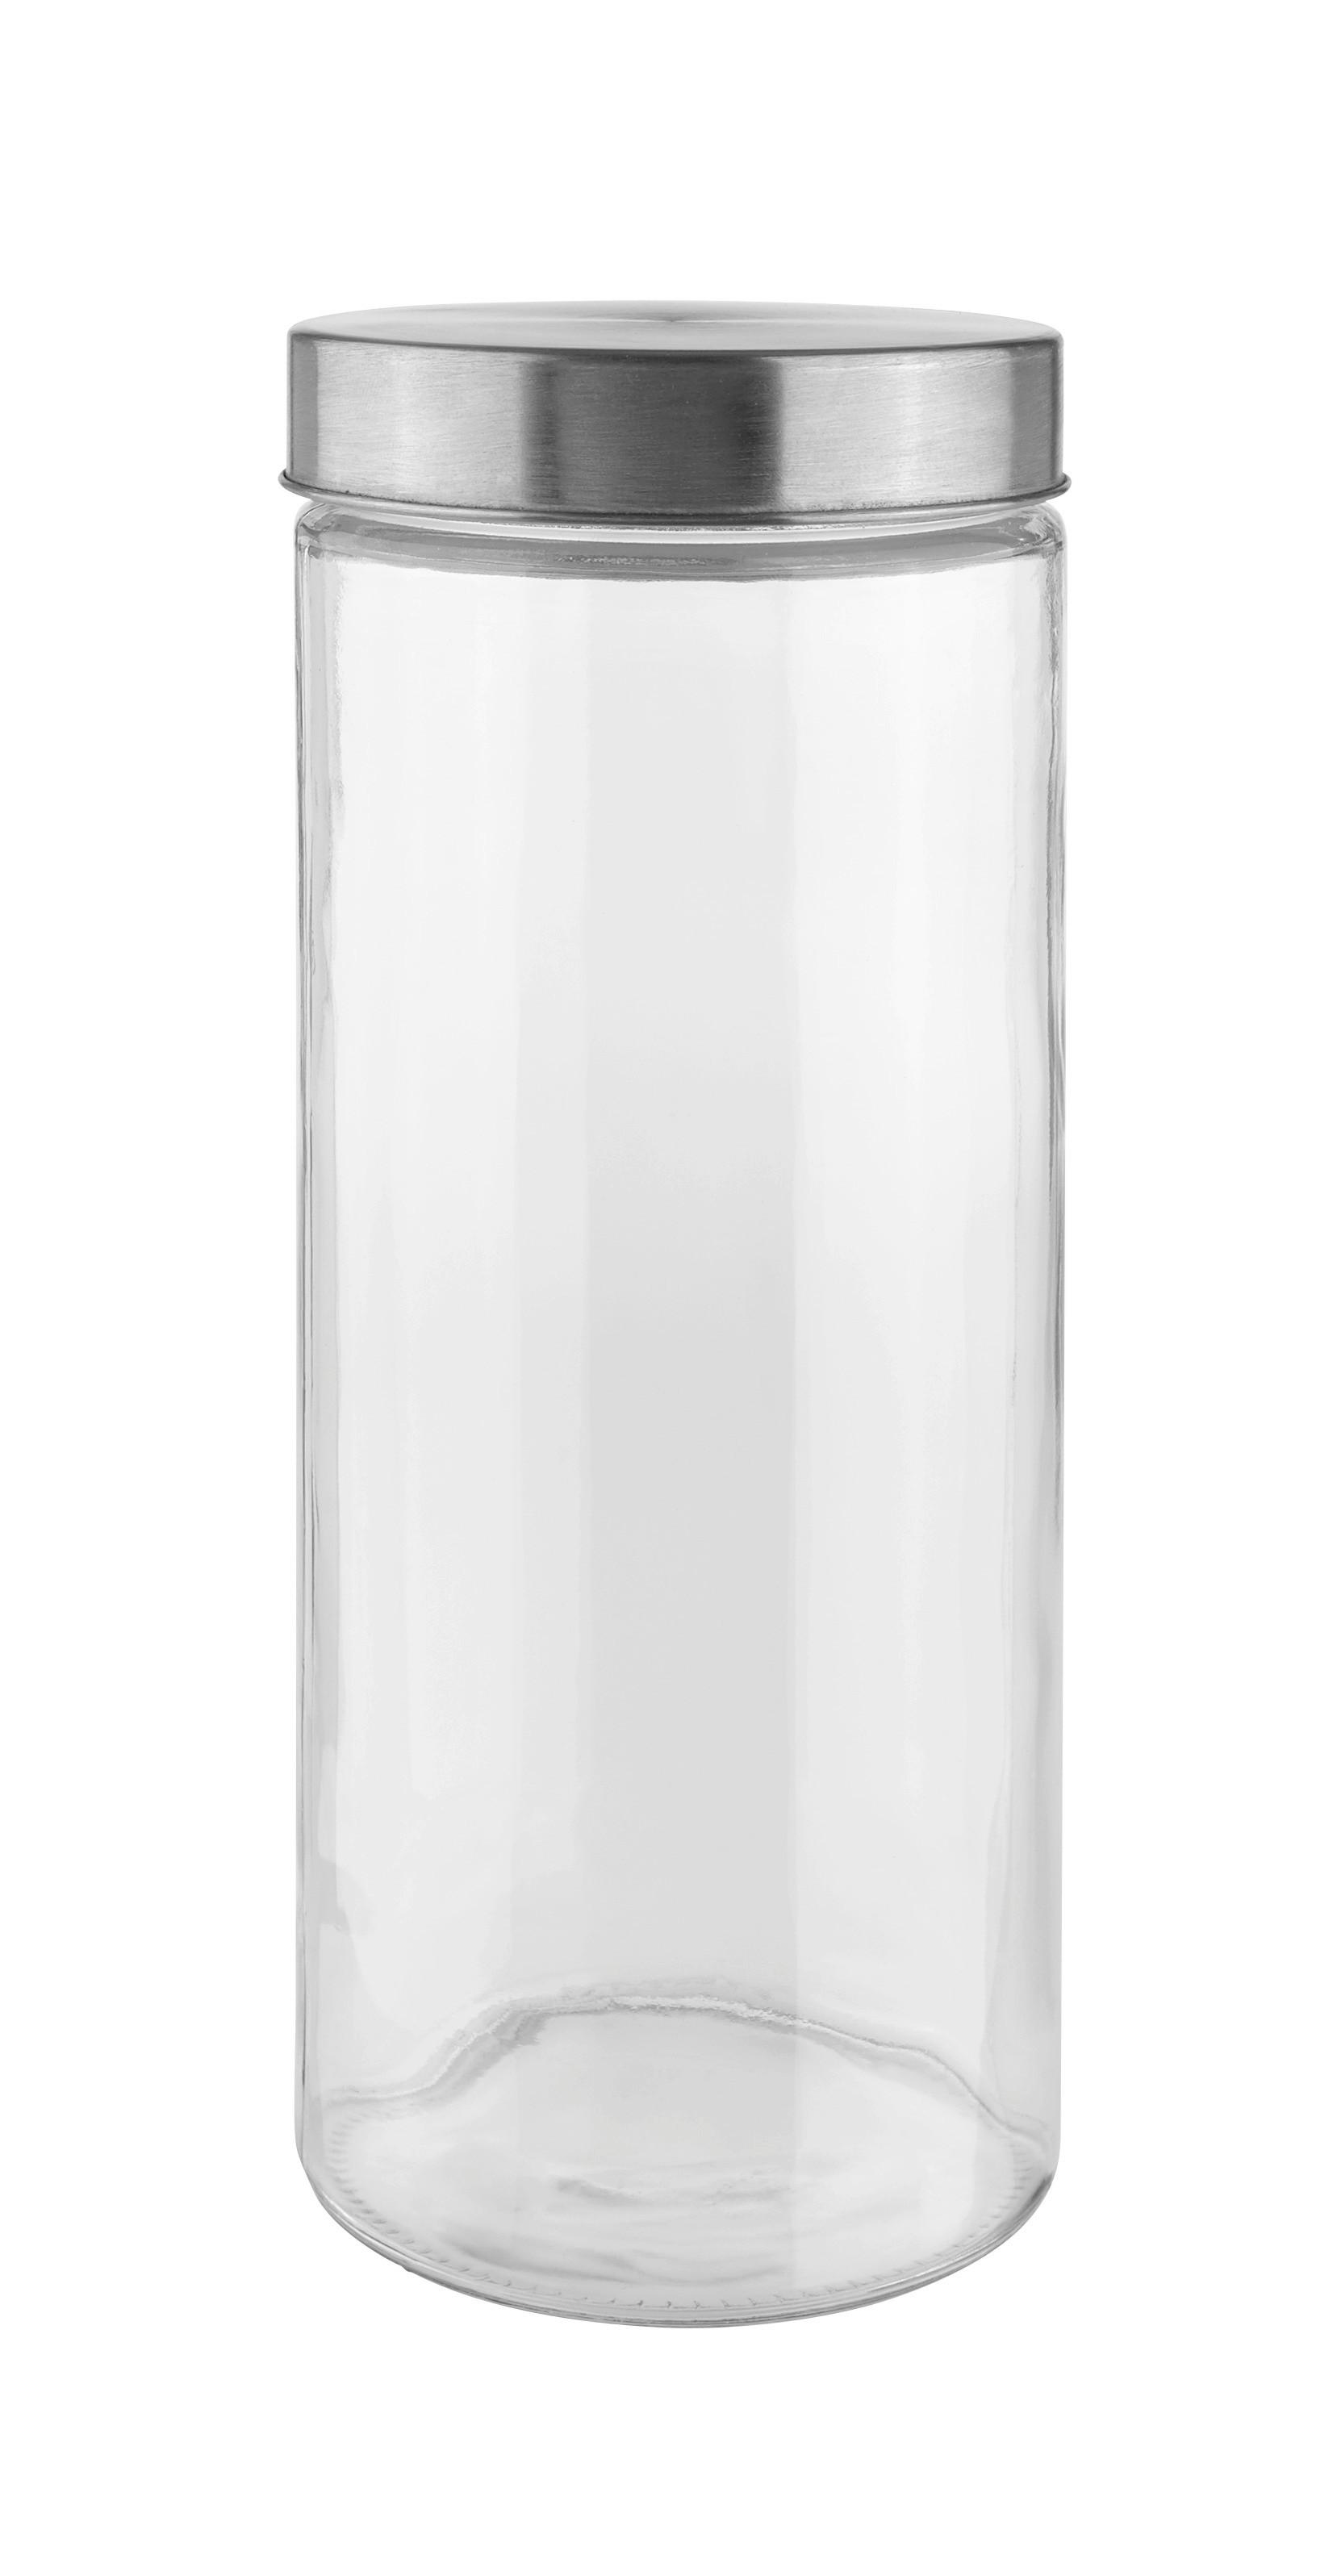 Posoda Za Shranjevanje Magnus - 1,75 L - barve nerjavečega jekla/prozorno, Moderno, kovina/steklo (11,5/27,5cm) - Modern Living